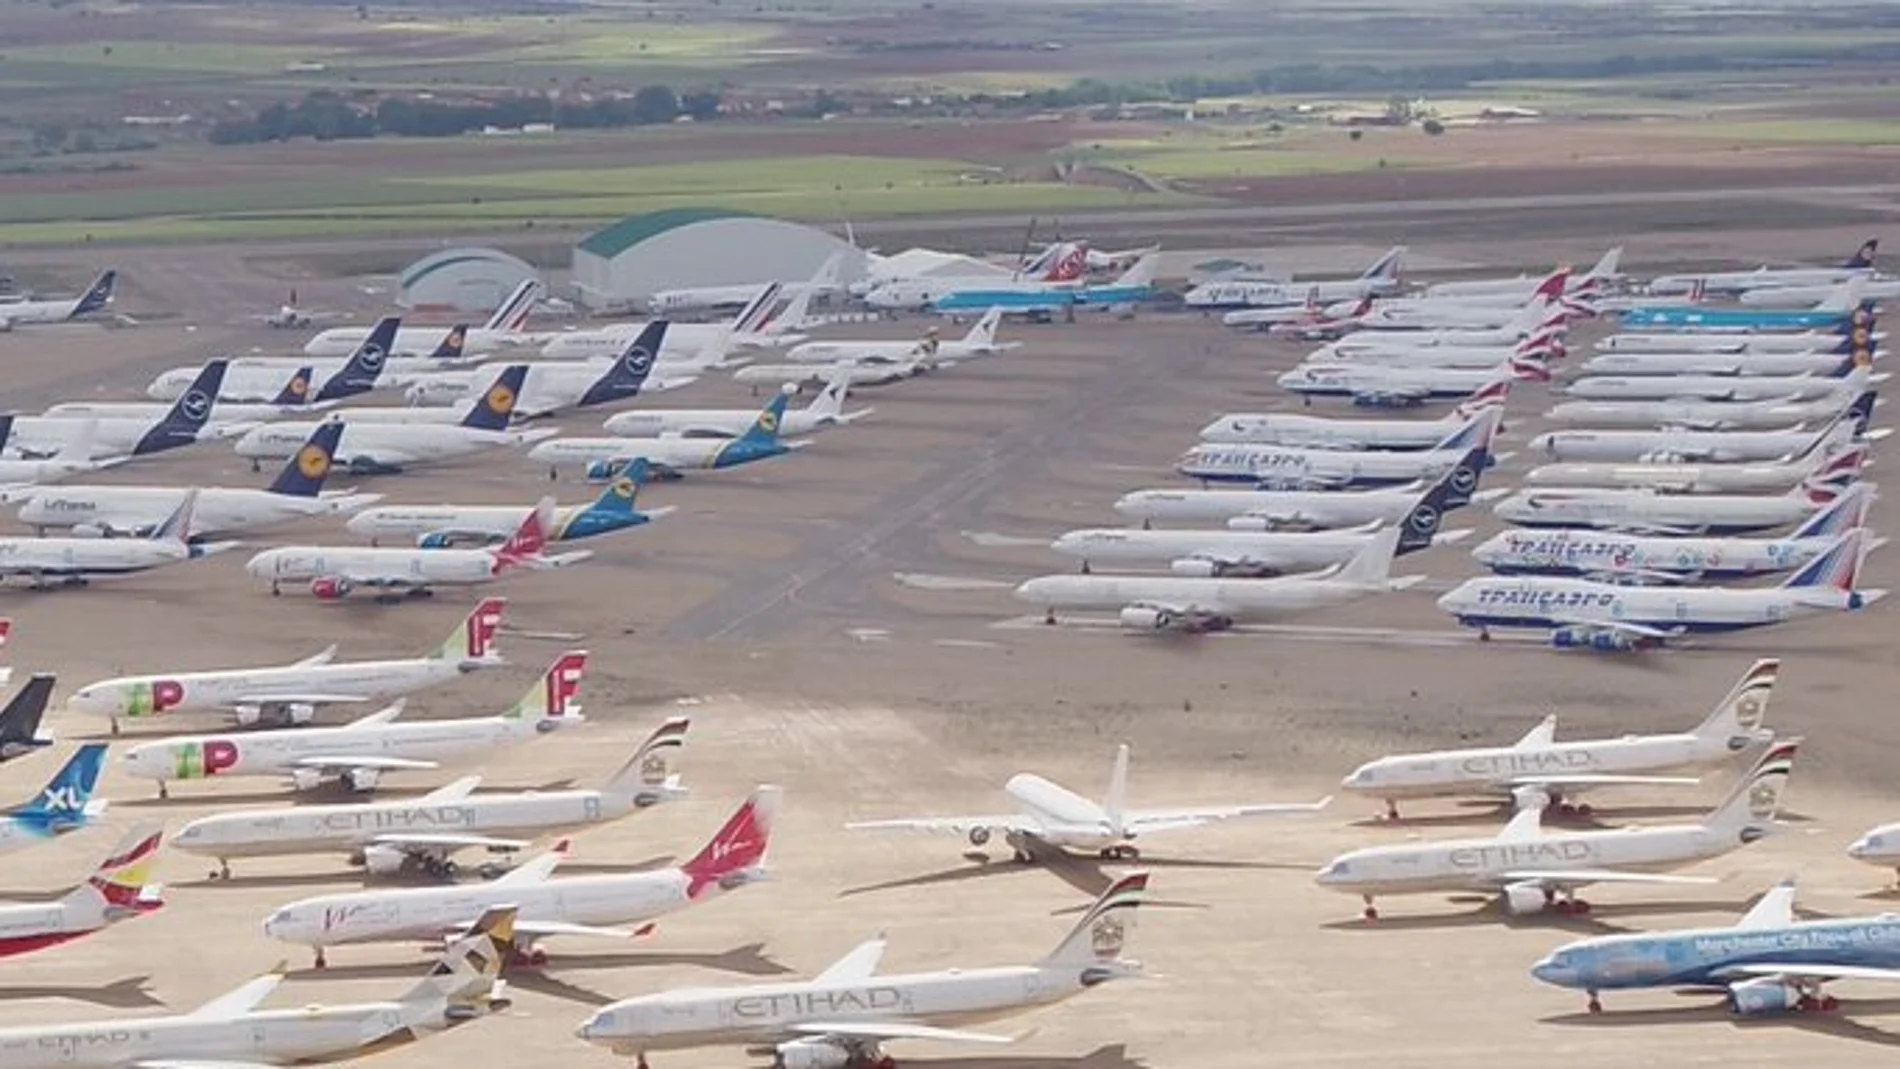 Vista actual de uno de los aparcamientos del aeropuerto de Teruel abarrotado de aviones